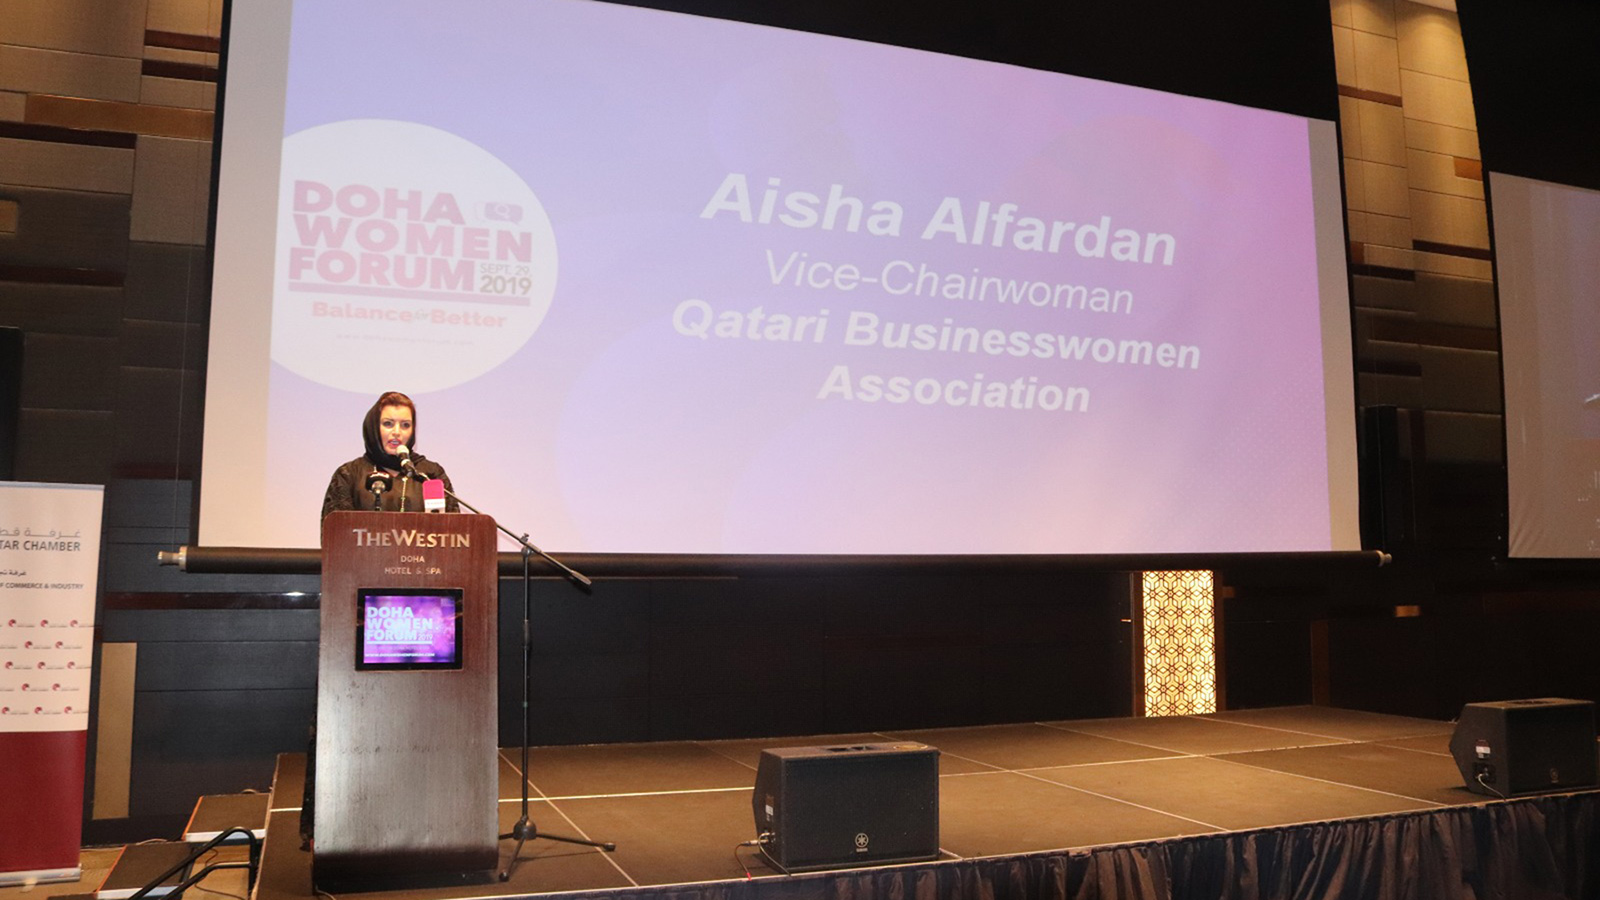 ‪عائشة الفردان: المرأة القطرية تفخر بأن قطر استطاعت ردم الهوة بشكل كامل بين الذكور والإناث في المجال التعليمي‬ (الجزيرة)